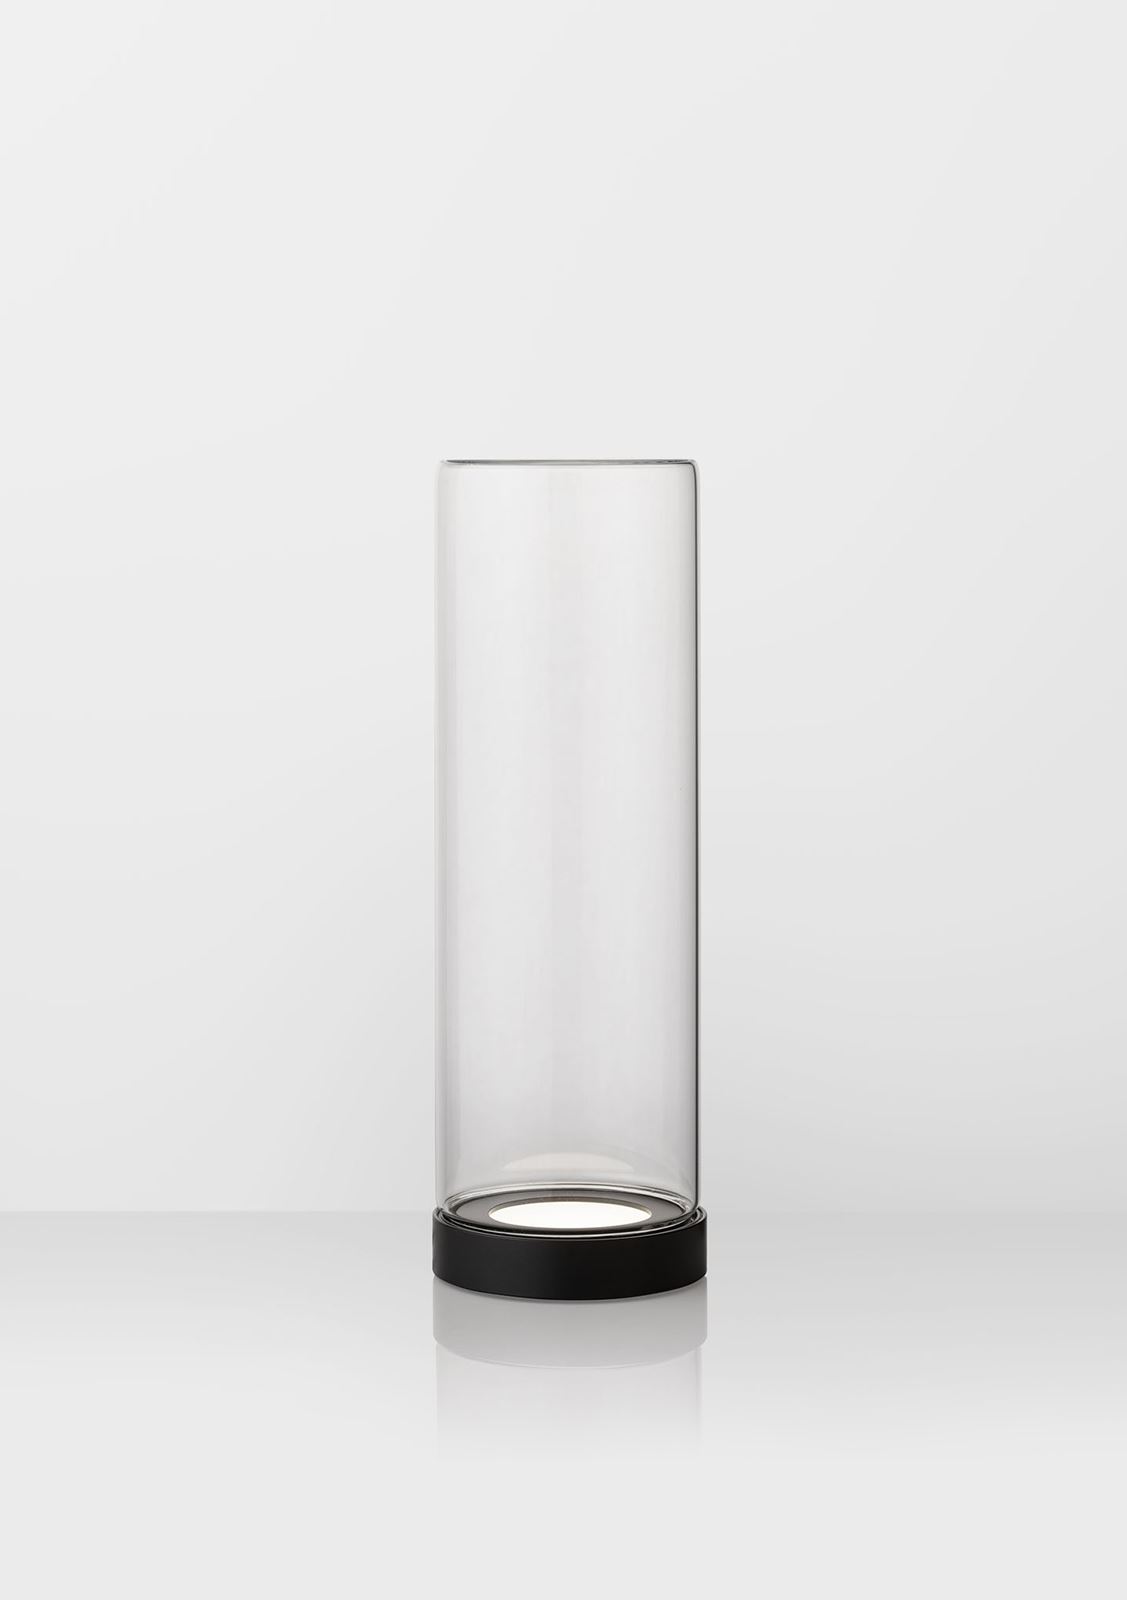 גופי תאורה בקטגוריית: מנורות שולחן  ,שם המוצר: GLASSY